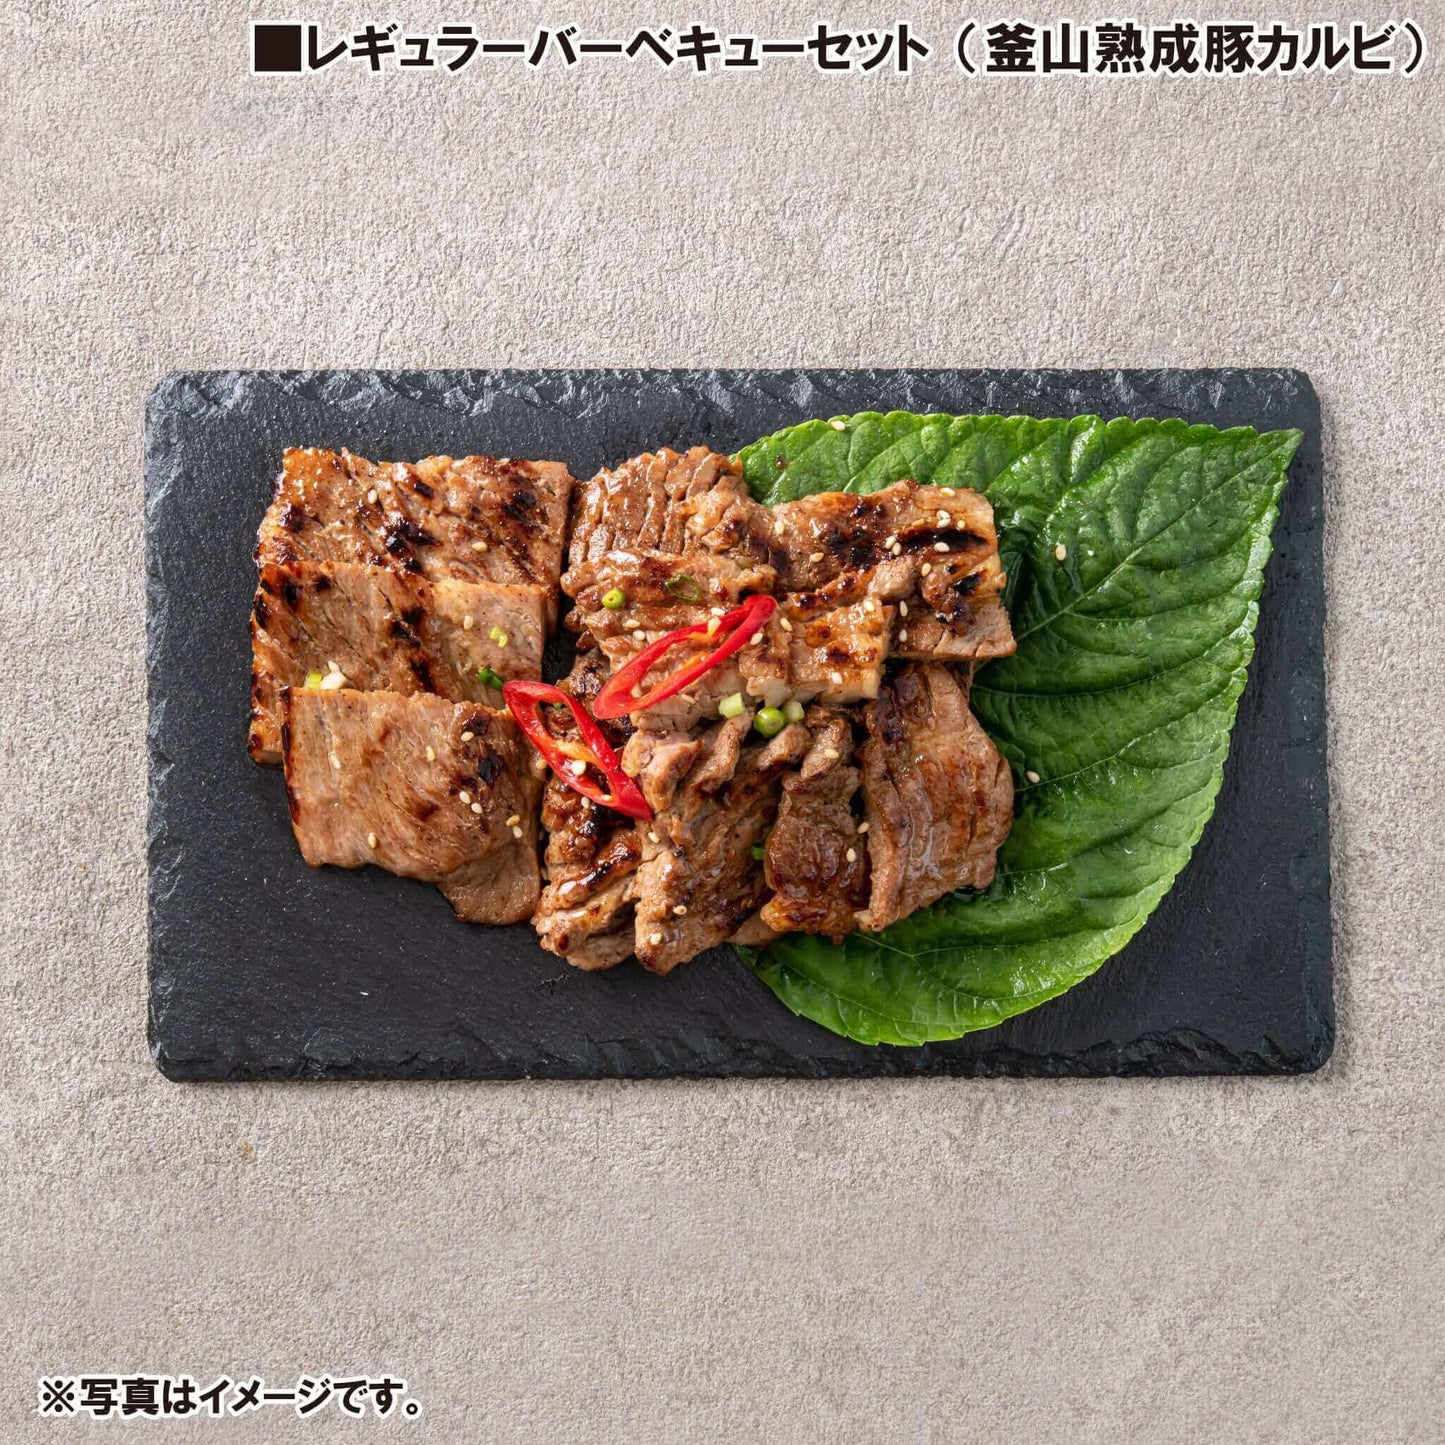 レギュラーバーベキューセット - 韓国惣菜bibim'ネットストア